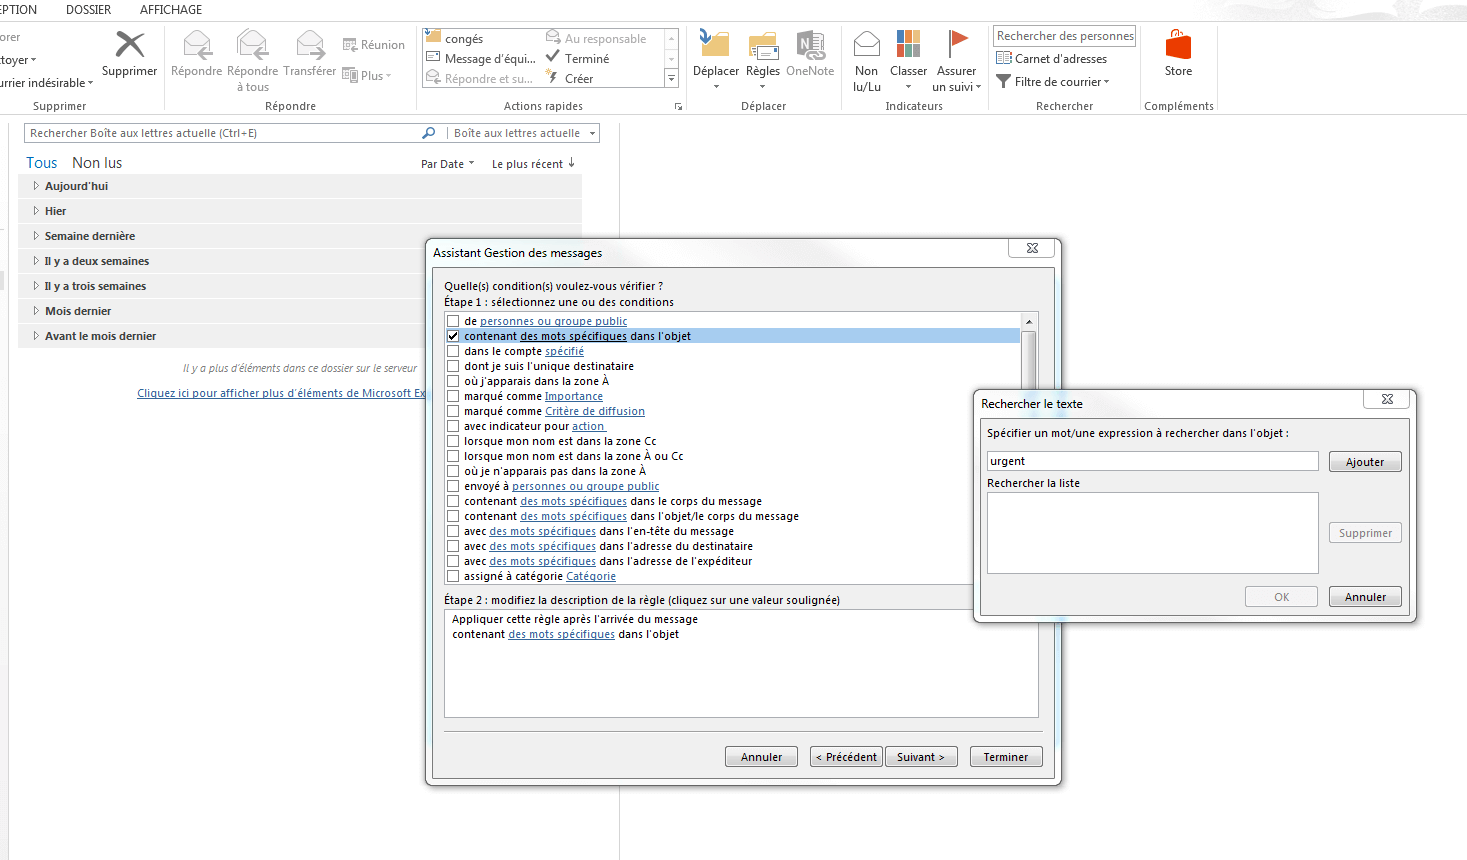 Microsoft Outlook 2013 : l’assistant Gestion des messages.